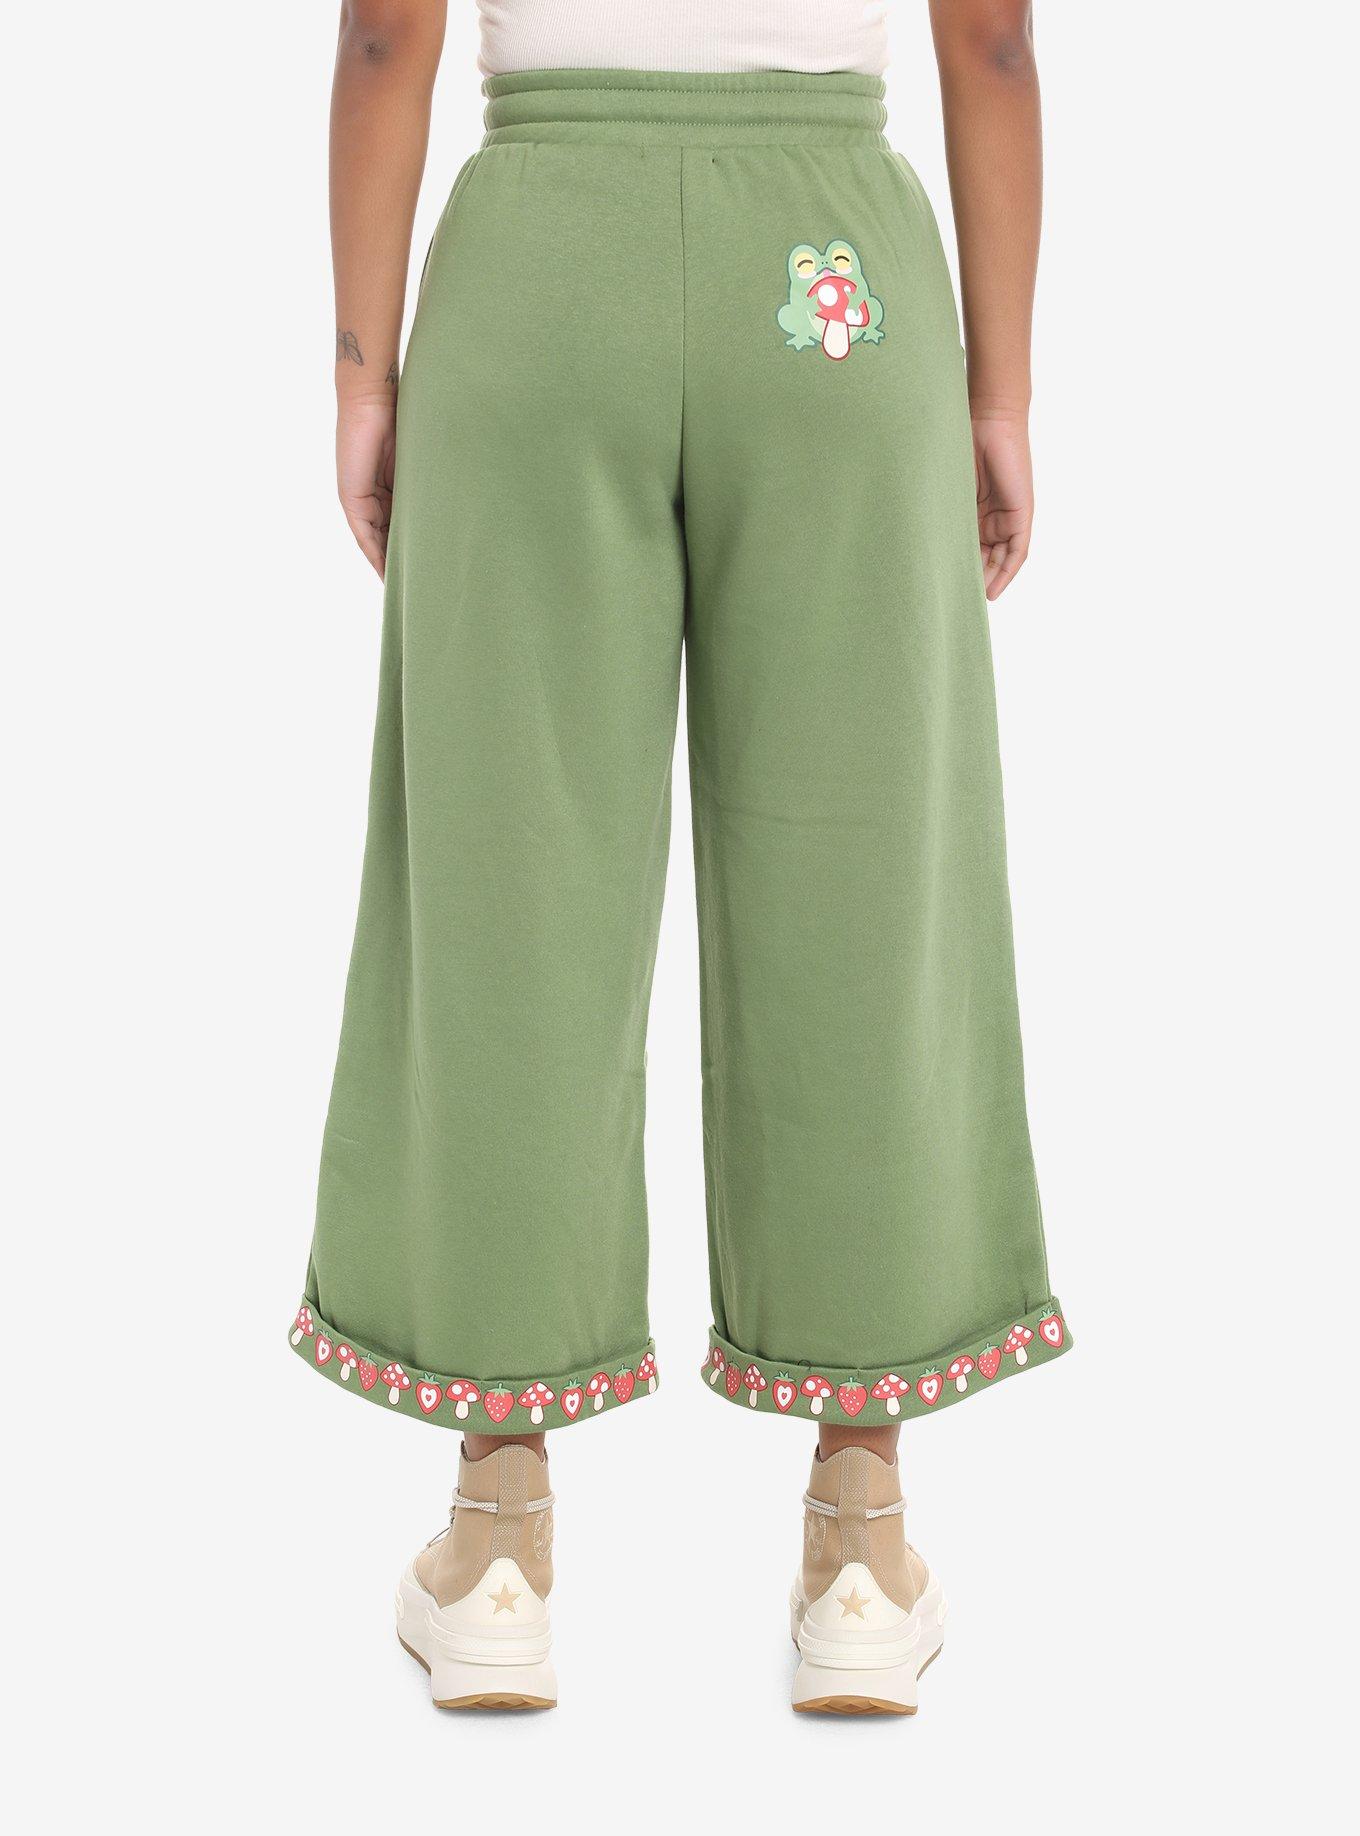 Sweet Society Green Frog Girls Lounge Pants, SAGE, alternate